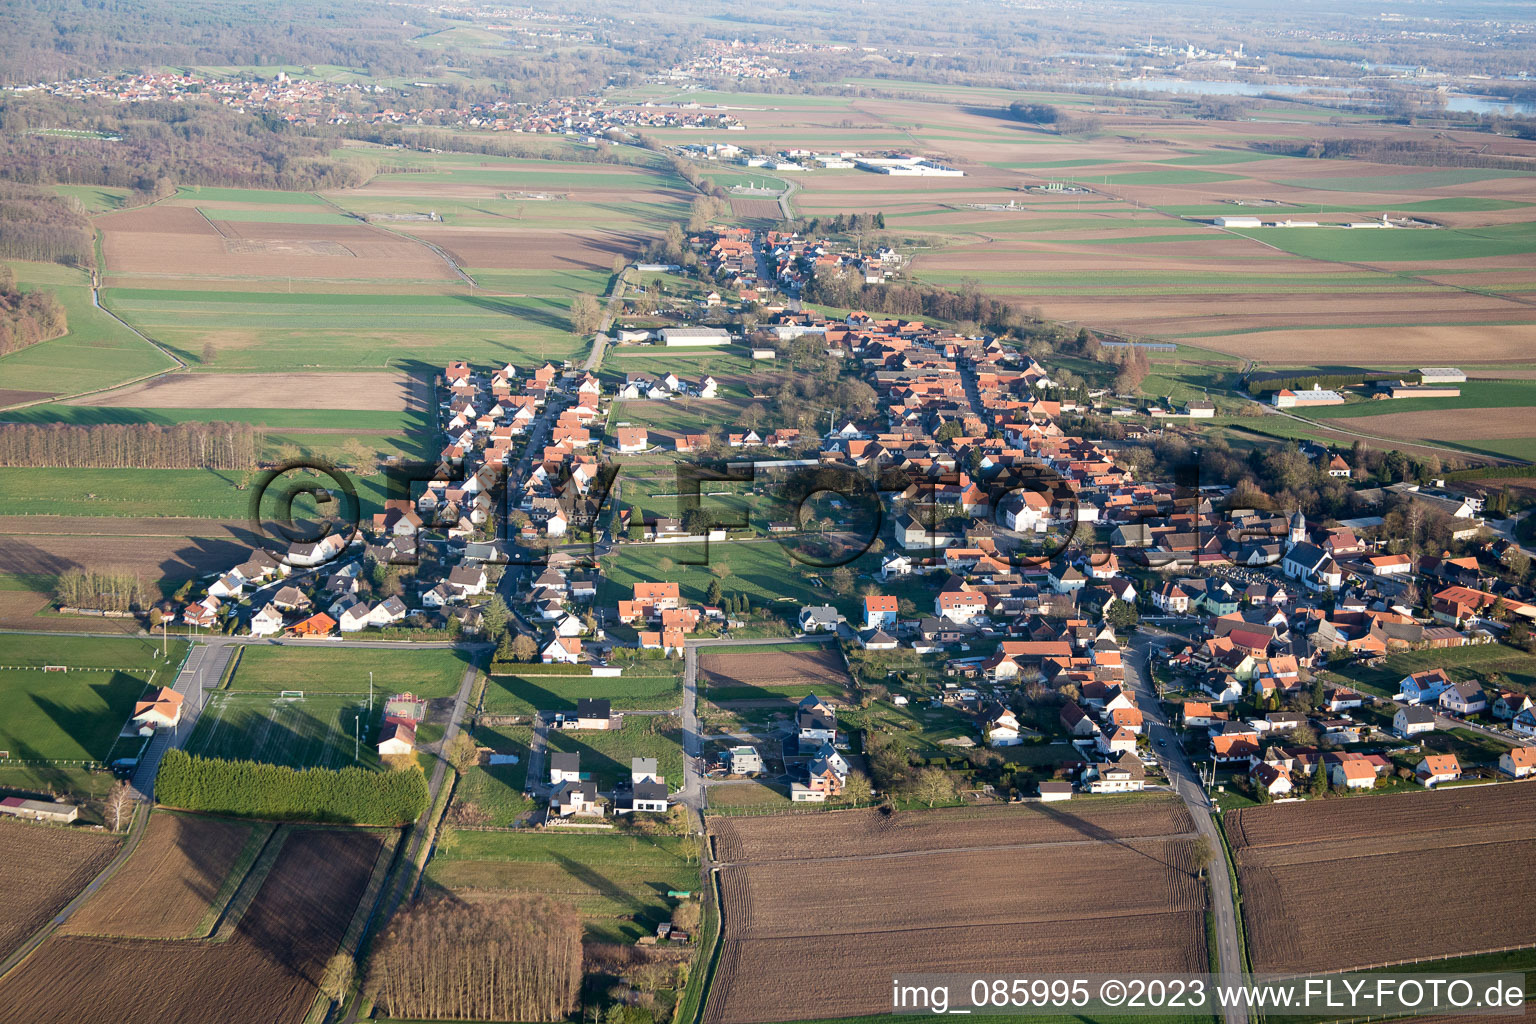 Vue oblique de Salmbach dans le département Bas Rhin, France